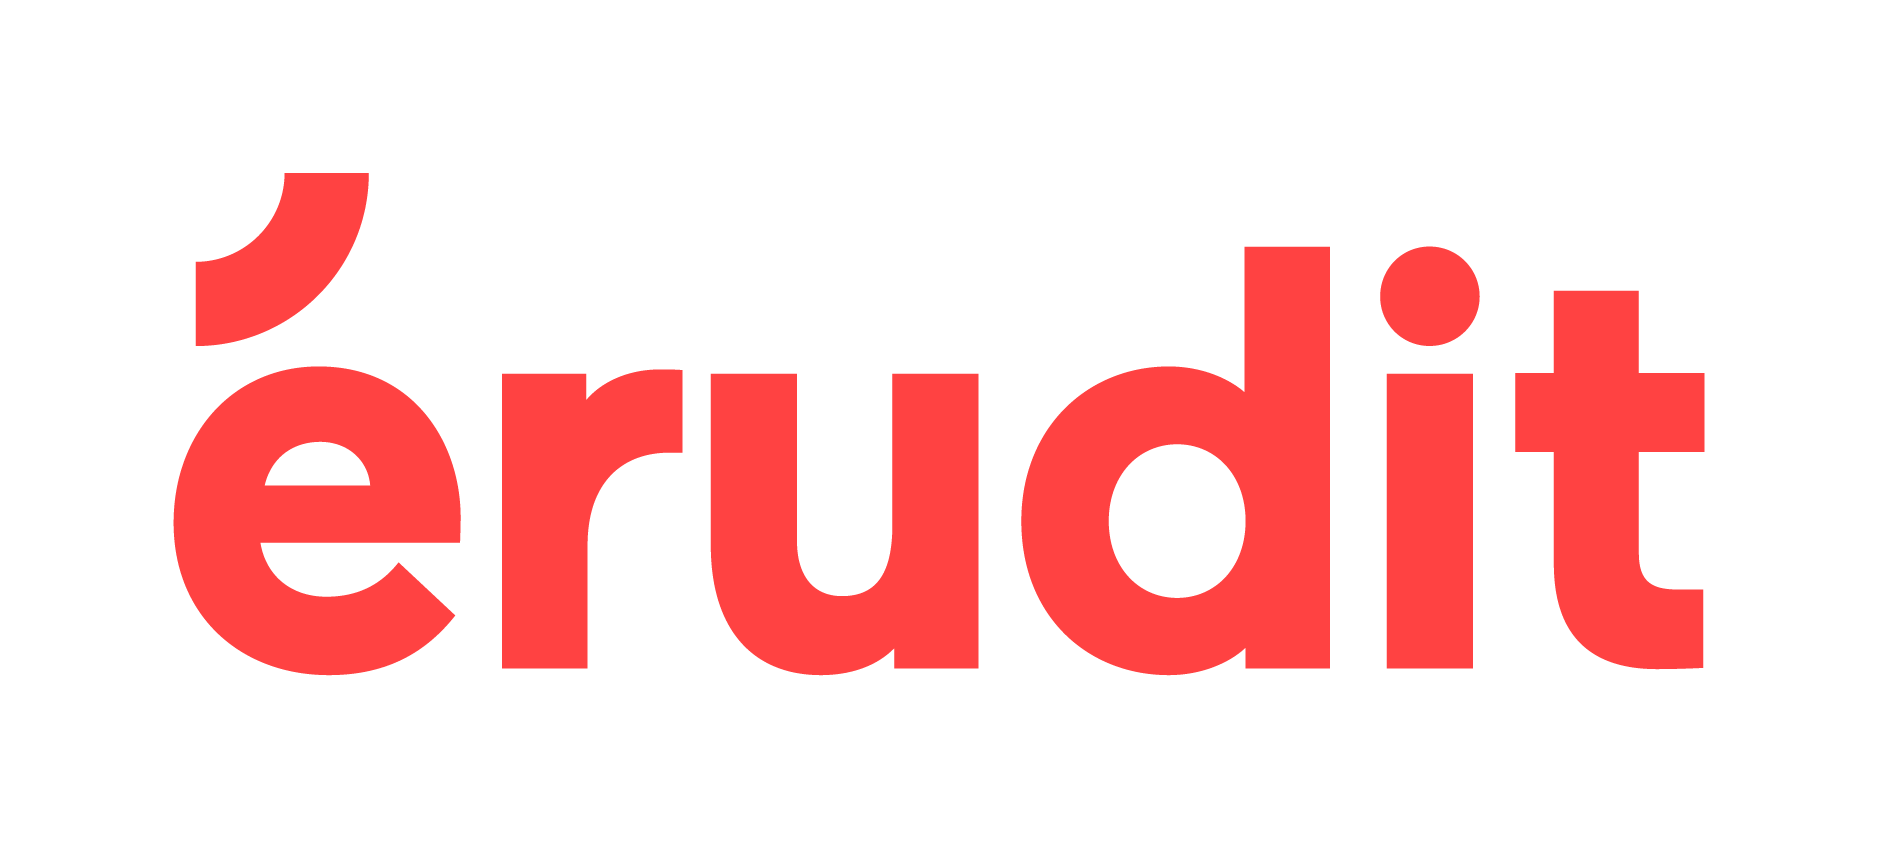 érudit - www.erudit.org/fr/